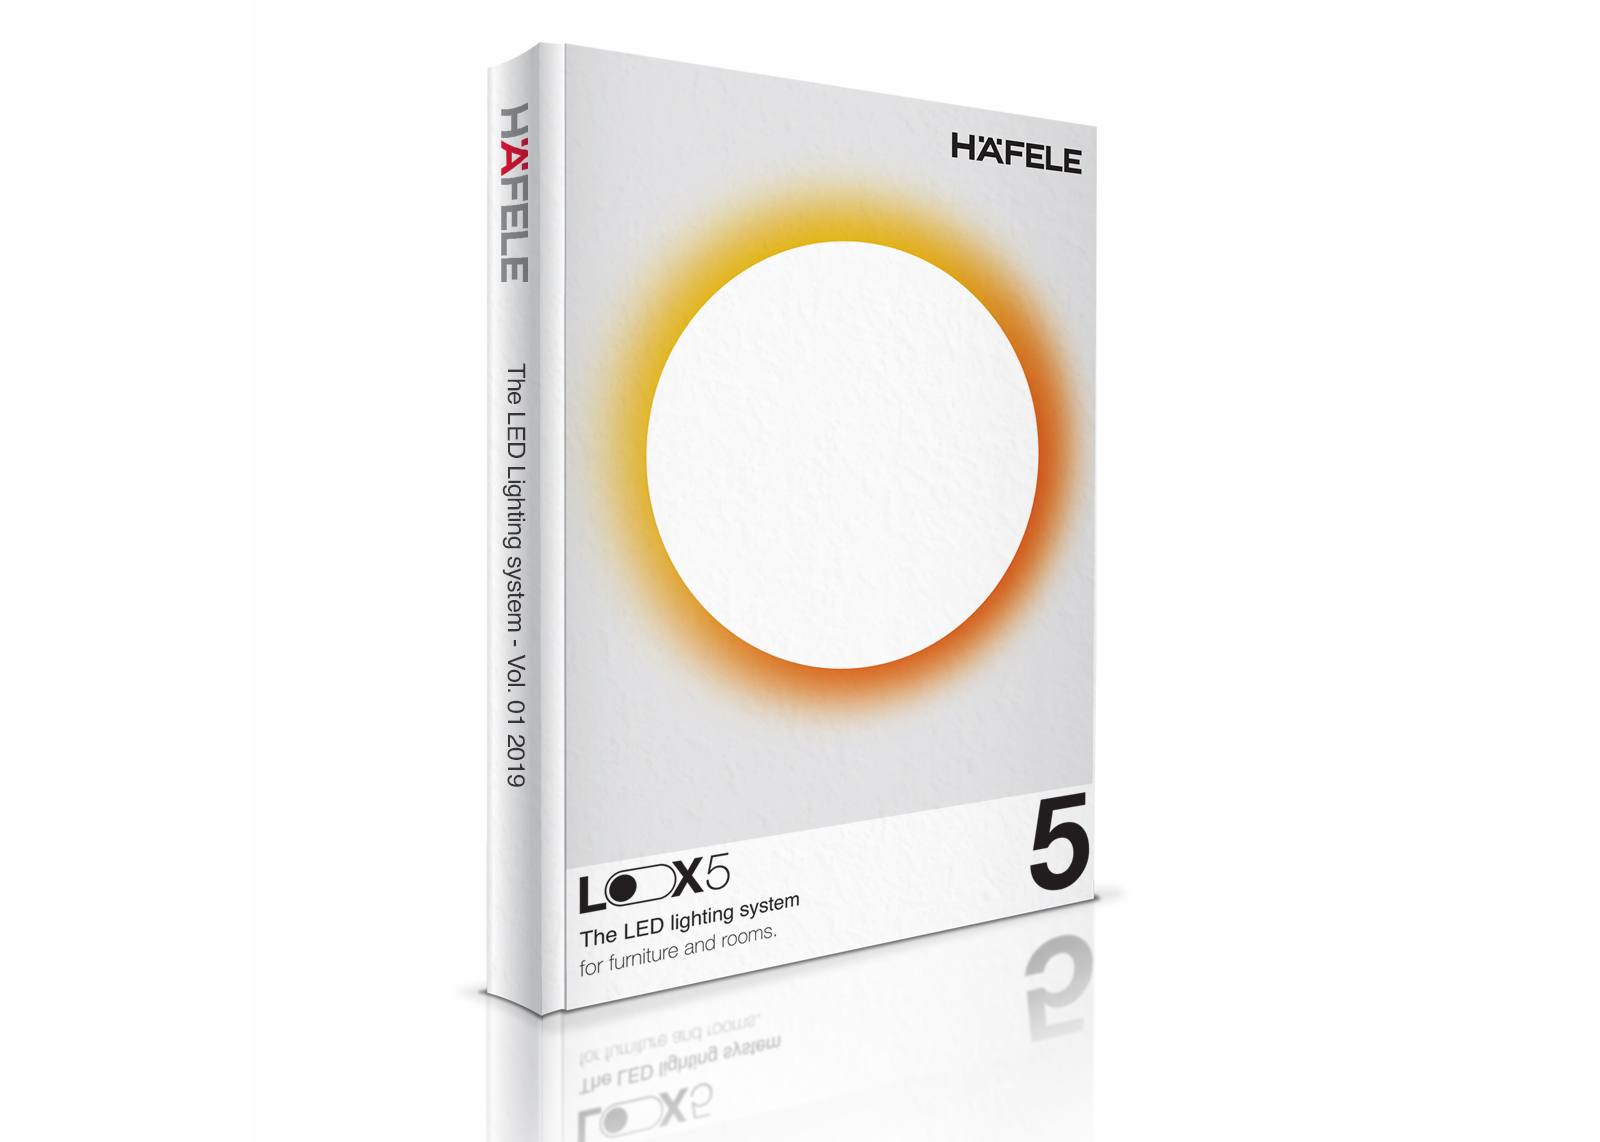 En omfangsrig brochure, her i messeudgave, viser det nye Loox5-system og indeholder alle komponenter.